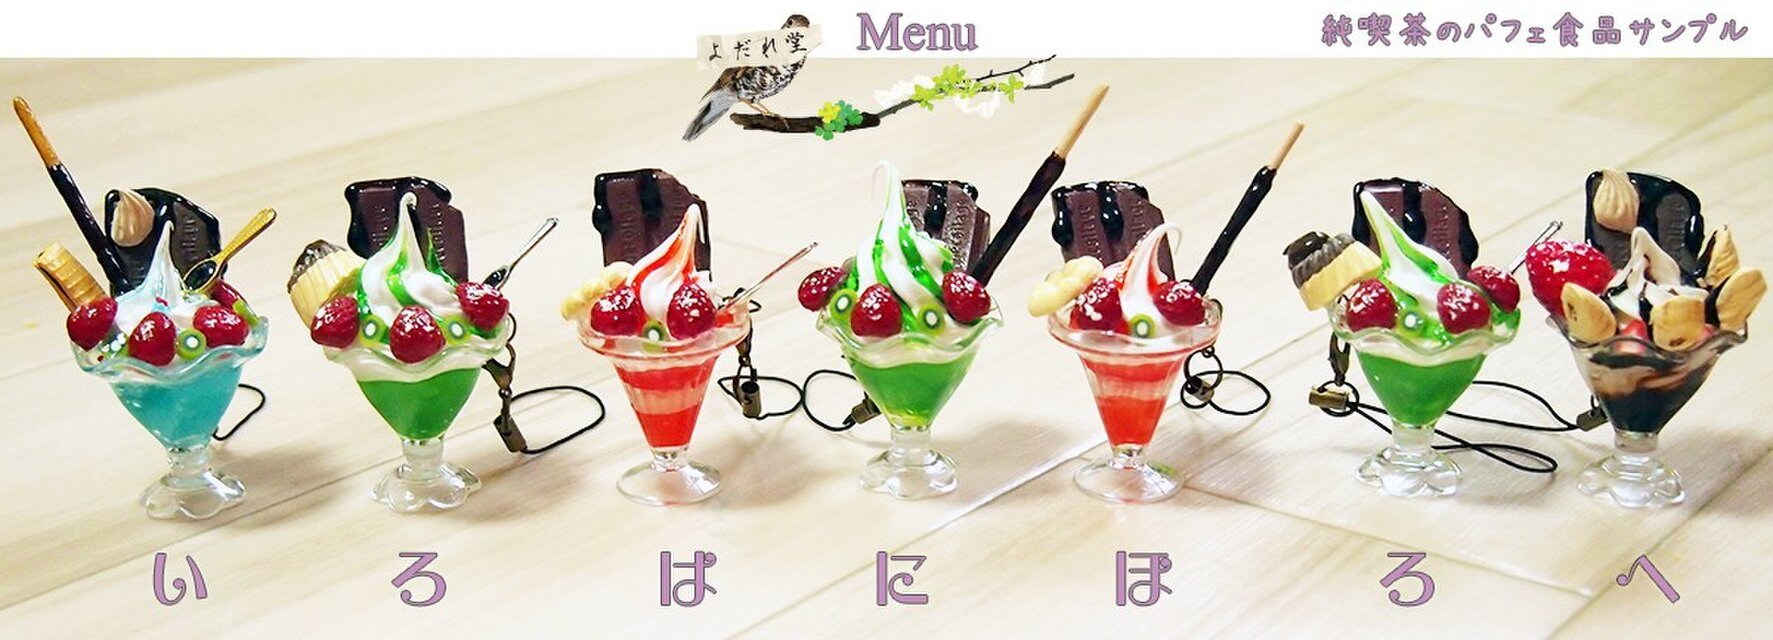 昭和レトロな純喫茶のメニュー食品サンプル風フルーツパフェ | iichi